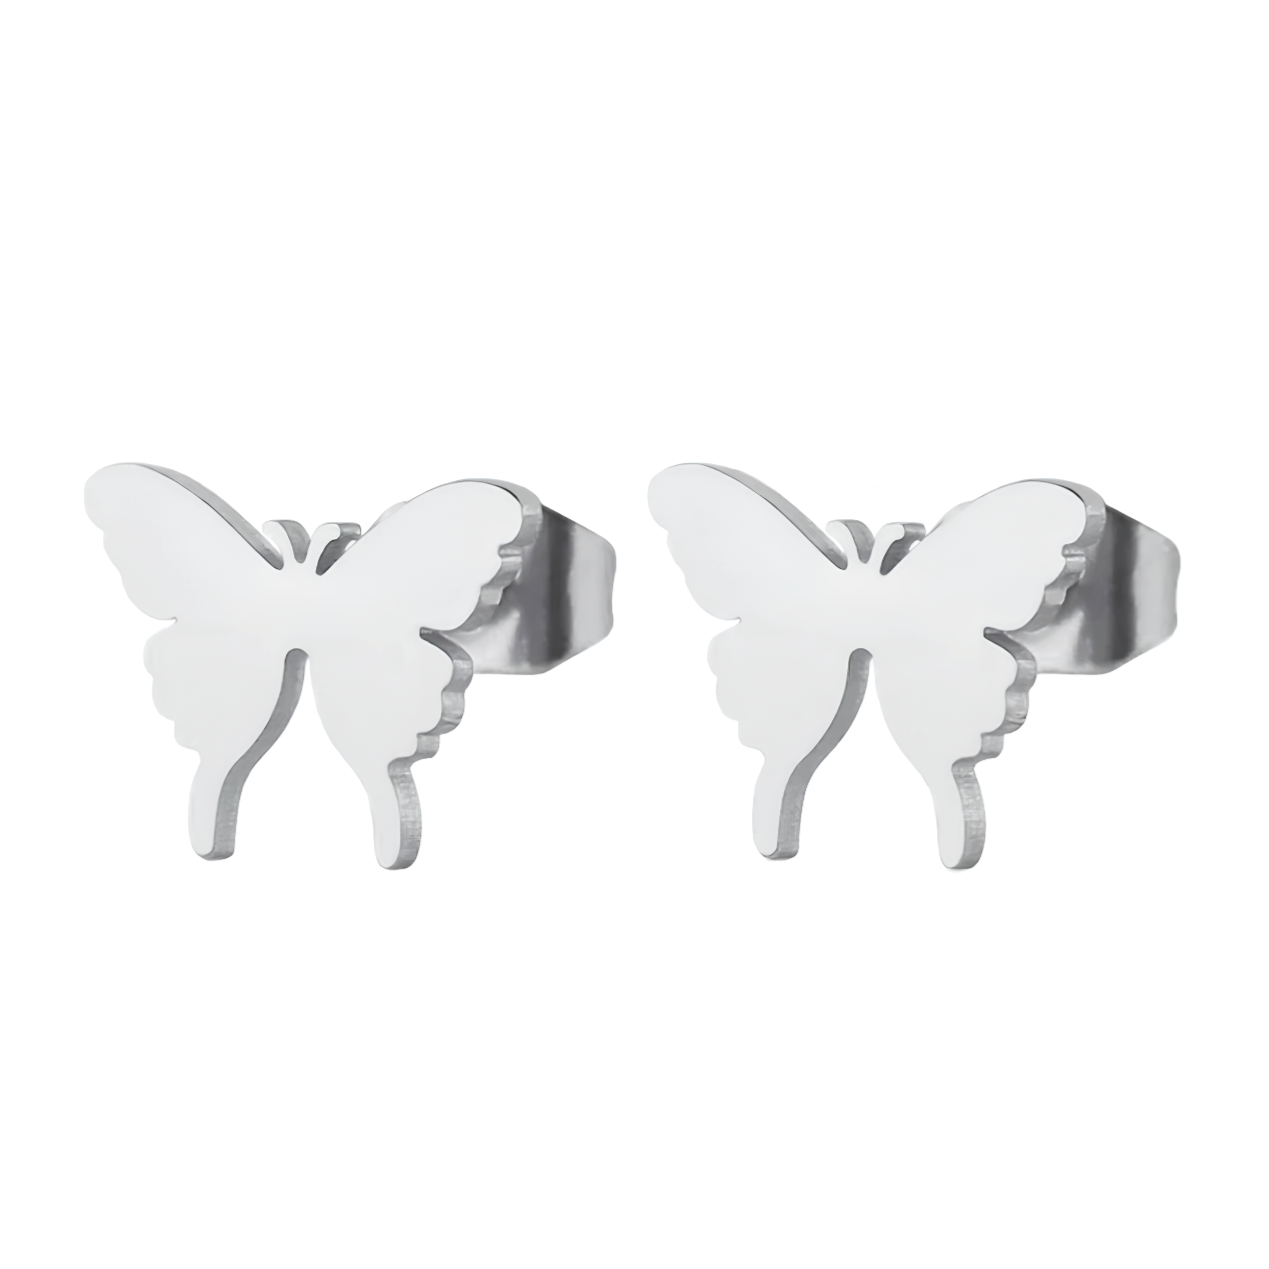 Boucles d'oreilles acier argent papillon.  Détails produit : Couleur argent. Acier inoxydable. Taille&nbsp;10 mm x 8 mm.  Version couleur&nbsp;or